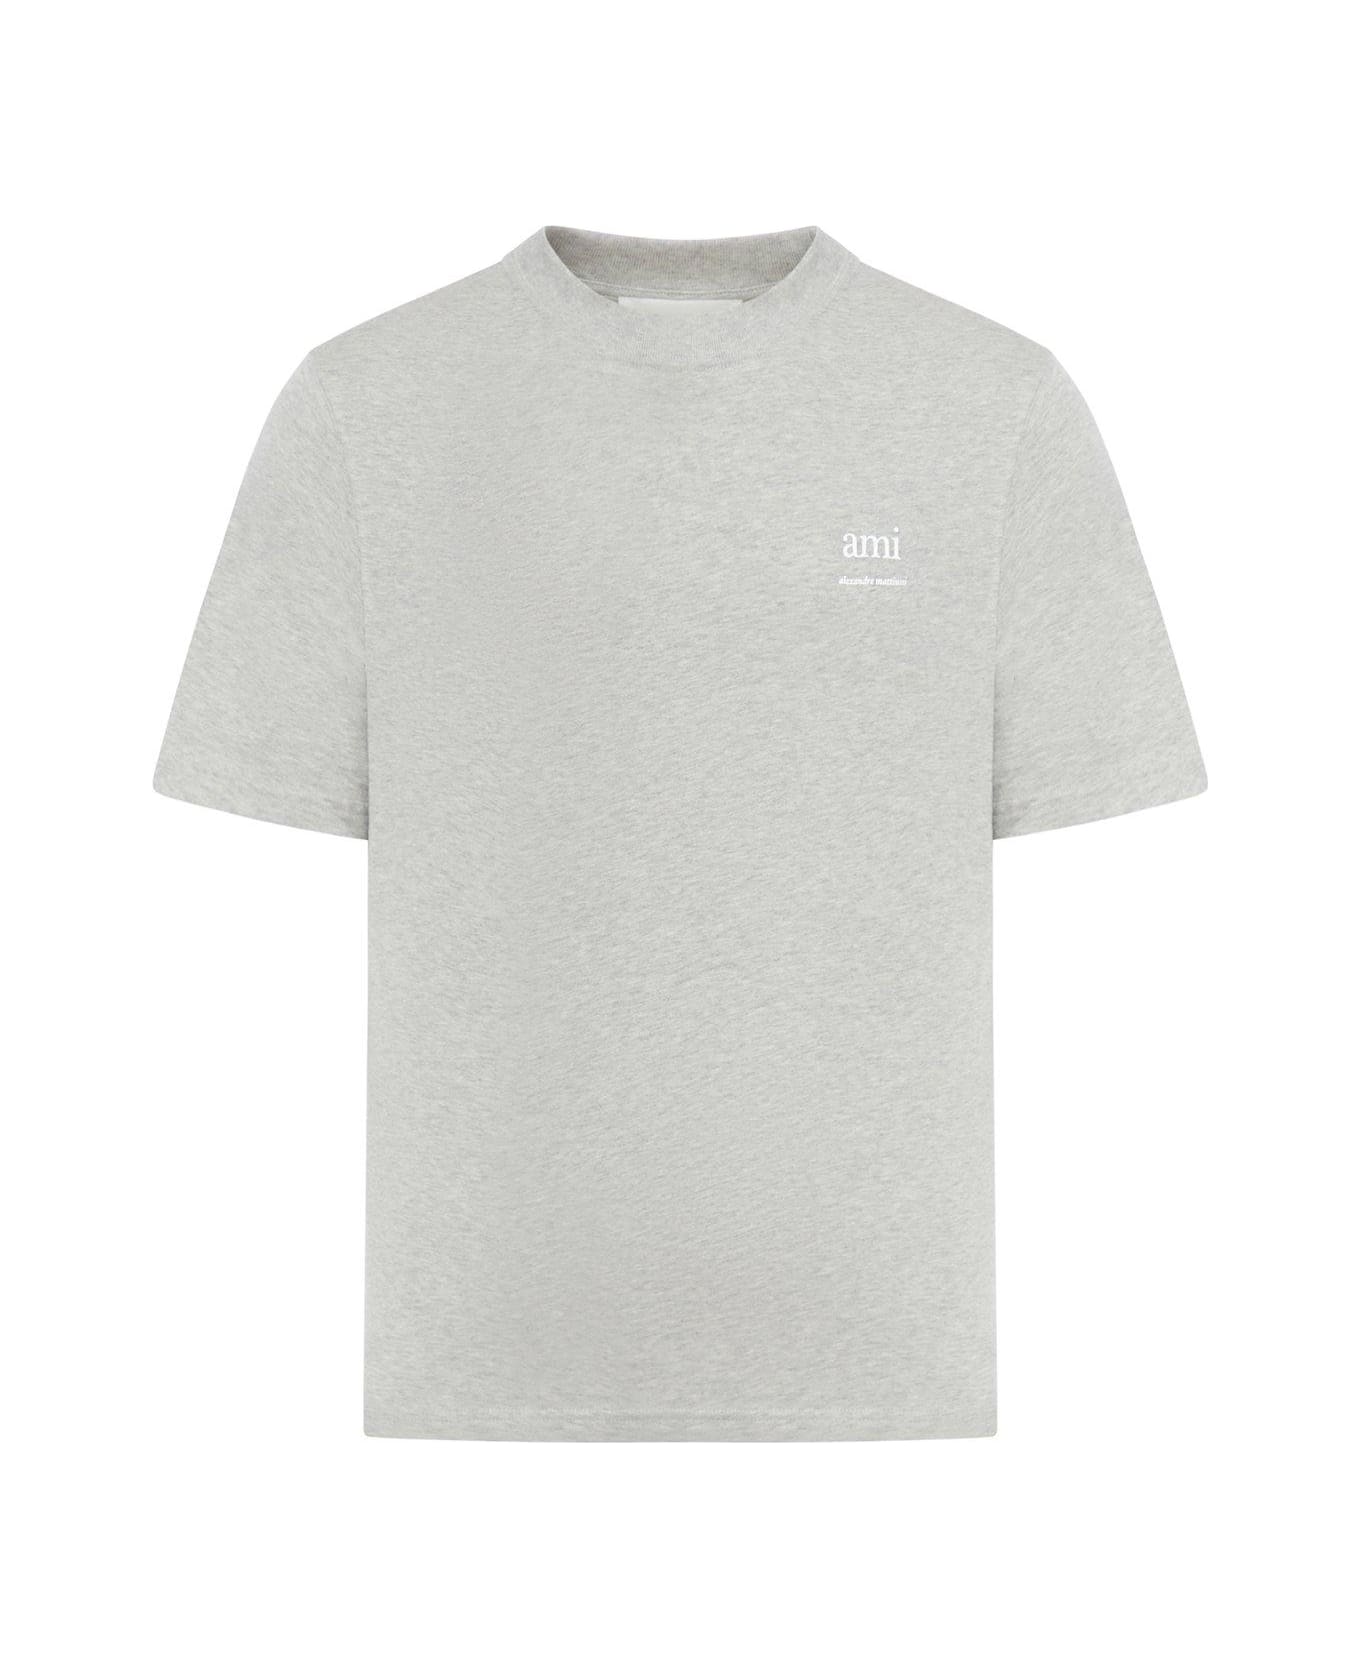 Ami Alexandre Mattiussi Paris Logo Printed Crewneck T-shirt - Grey Tシャツ